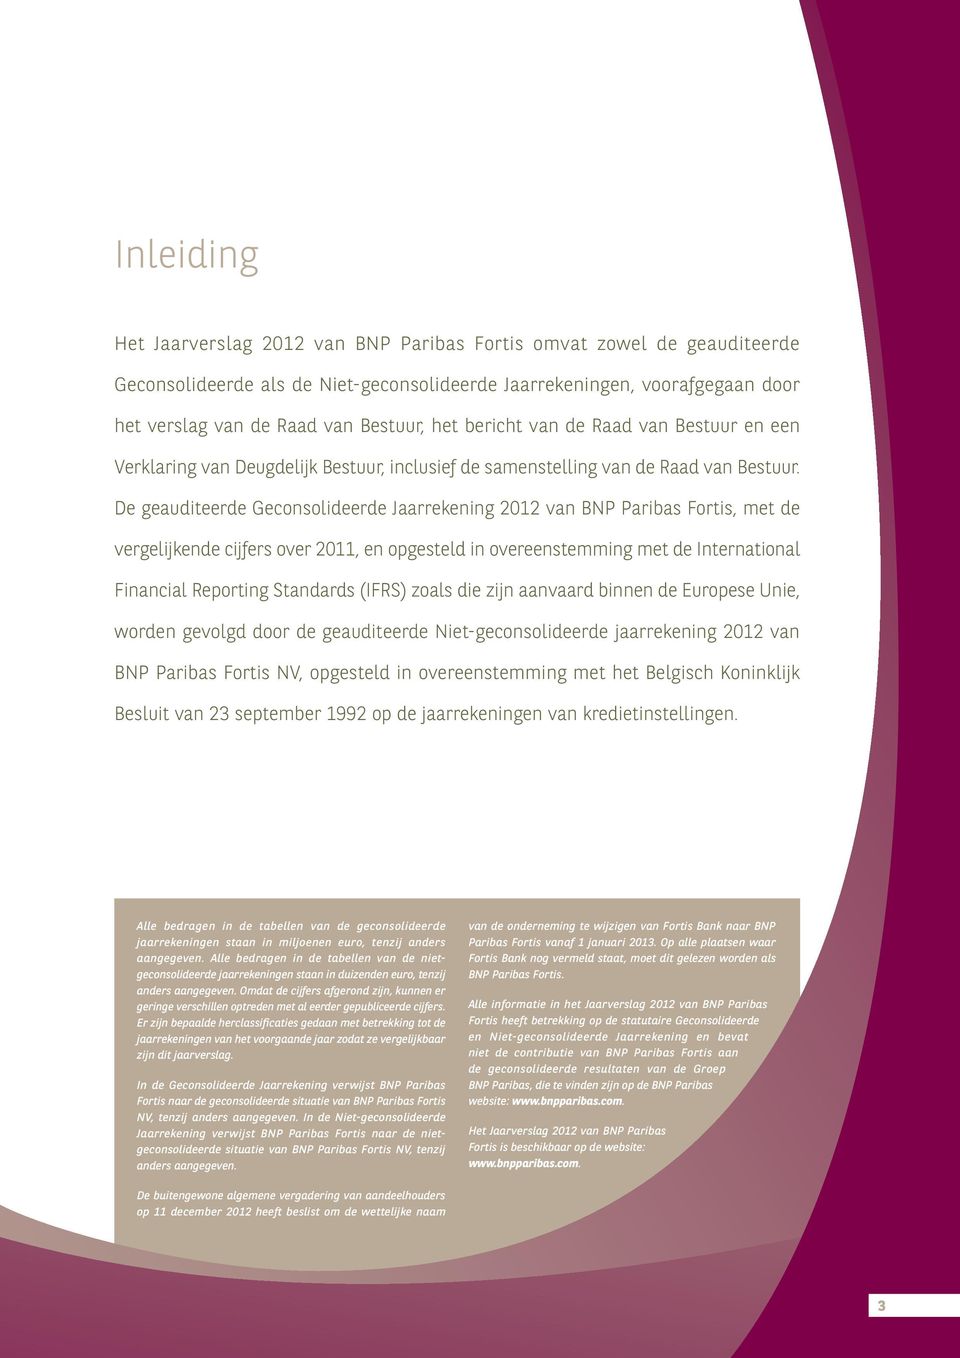 De geauditeerde Geconsolideerde Jaarrekening 2012 van BNP Paribas Fortis, met de vergelijkende cijfers over 2011, en opgesteld in overeenstemming met de International Financial Reporting Standards